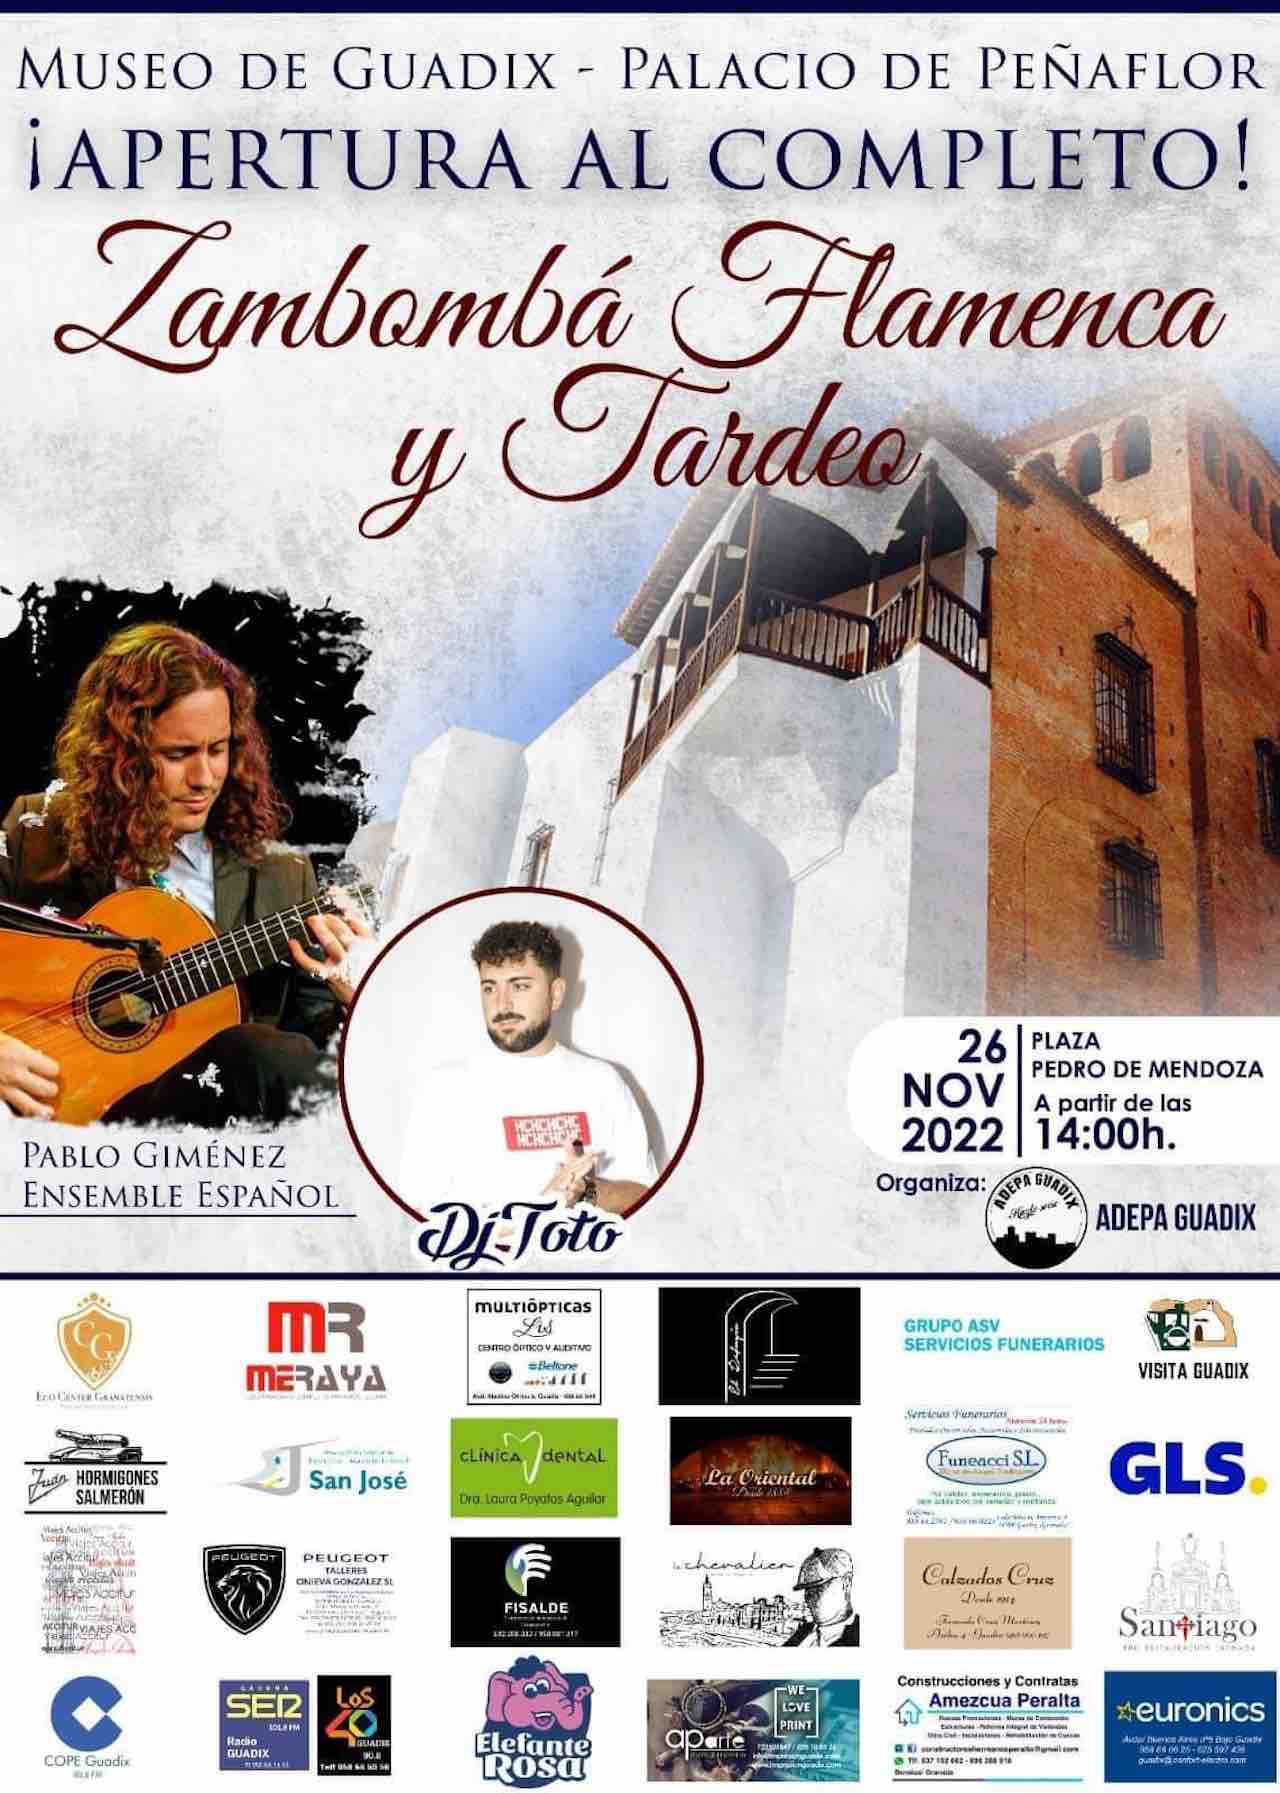 Zambombá Flamenca y tardeo en Guadix